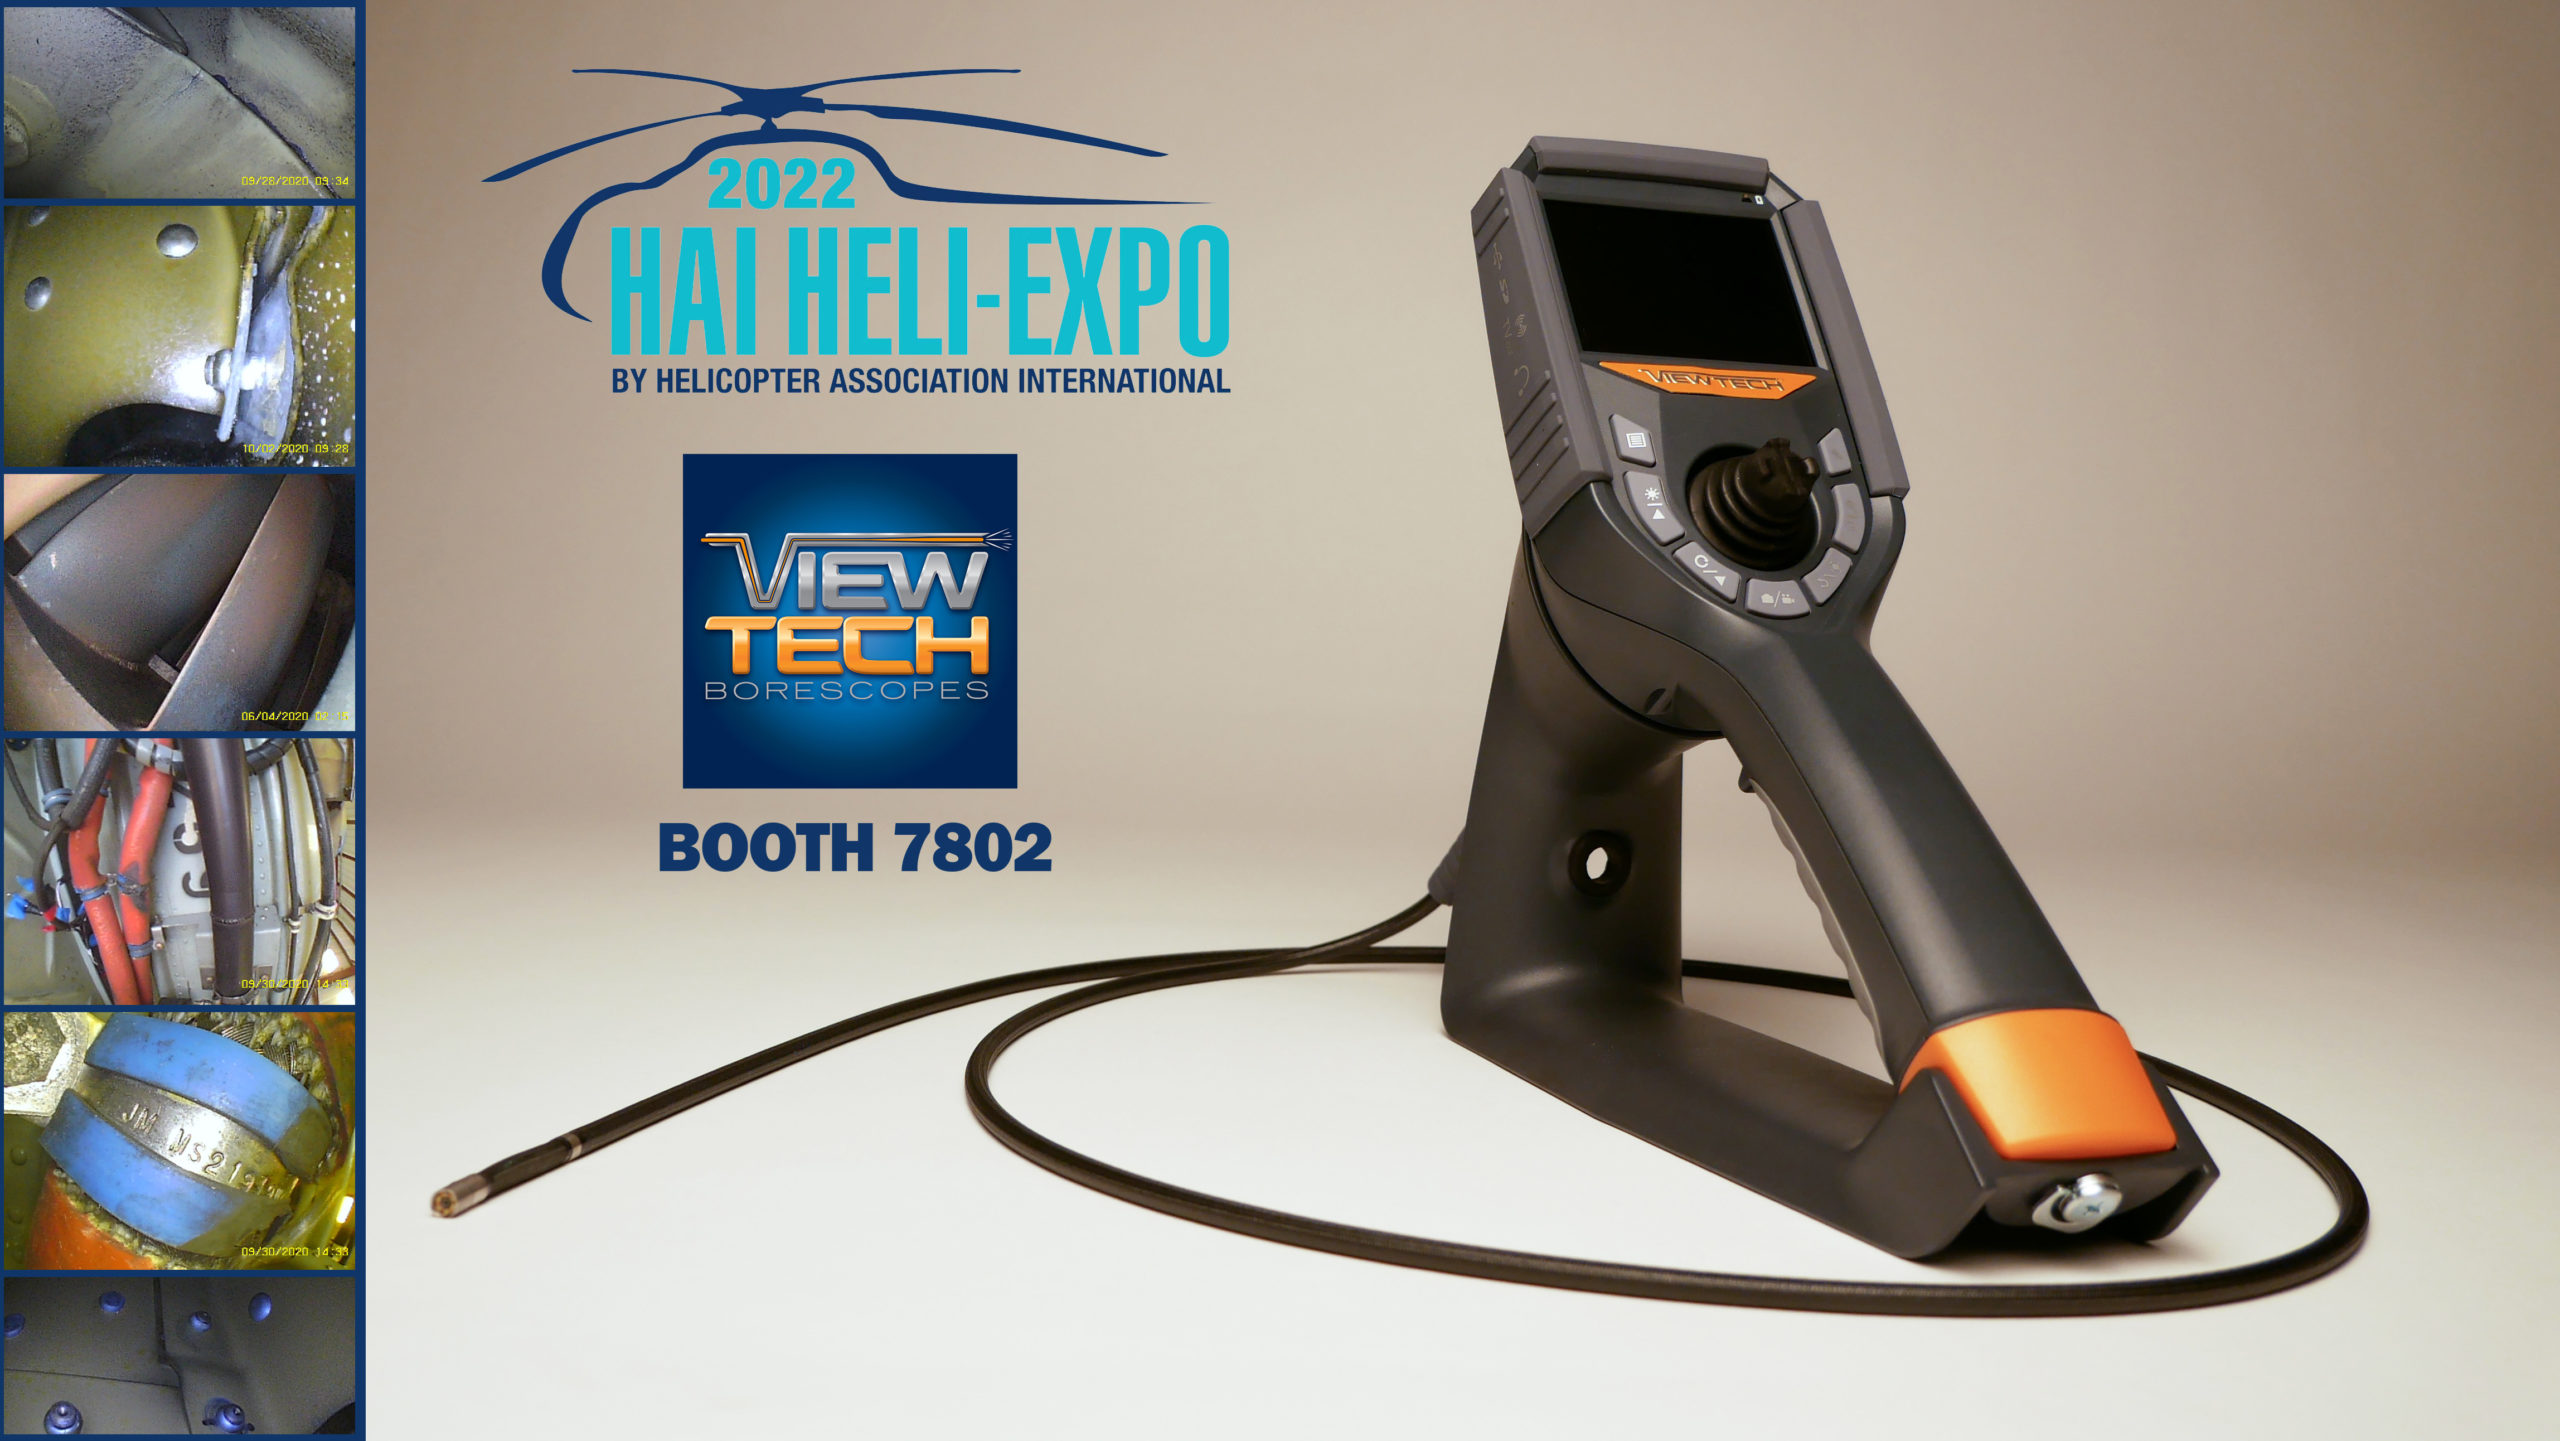 2022 HAI Heli Expo ViewTech Borescopes Exhibiting